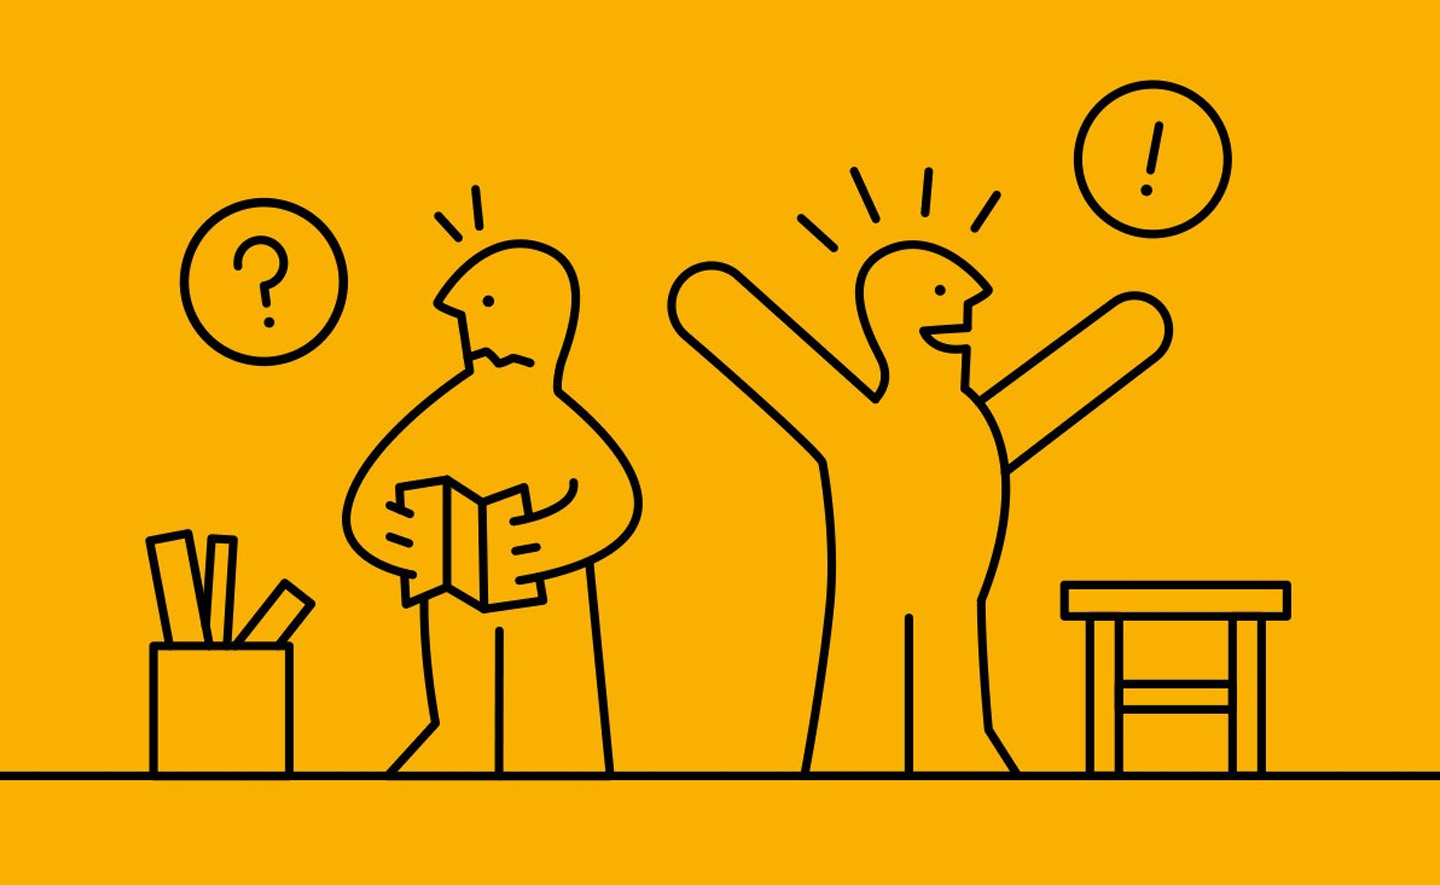 “Hiệu ứng IKEA”: Tại sao ta lại tự hào vì sự sáng tạo và những thứ do chính mình làm ra?